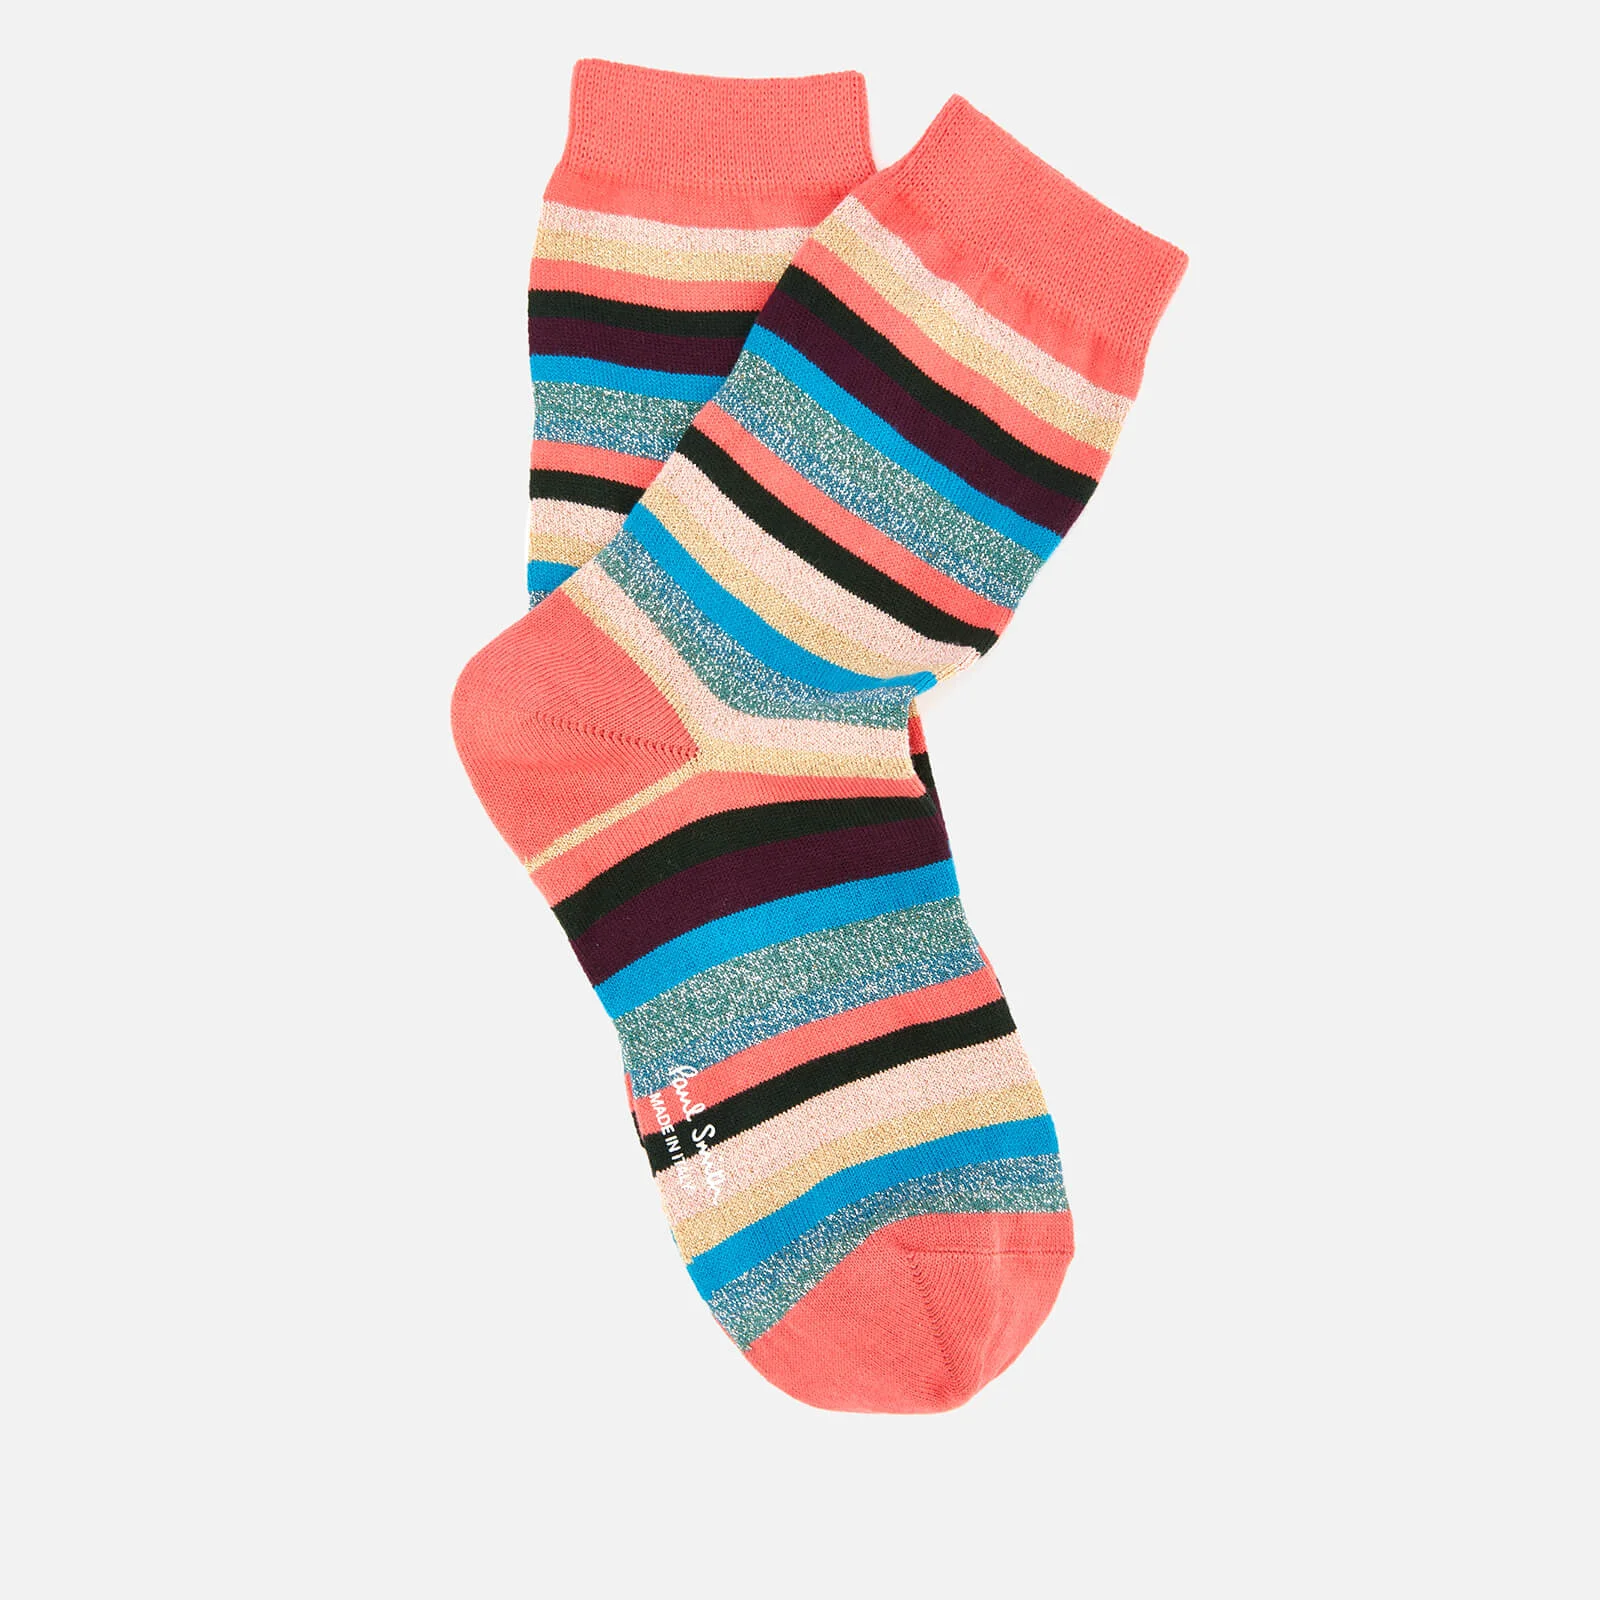 Paul Smith Women's Isla Stripe Socks - Multi Image 1